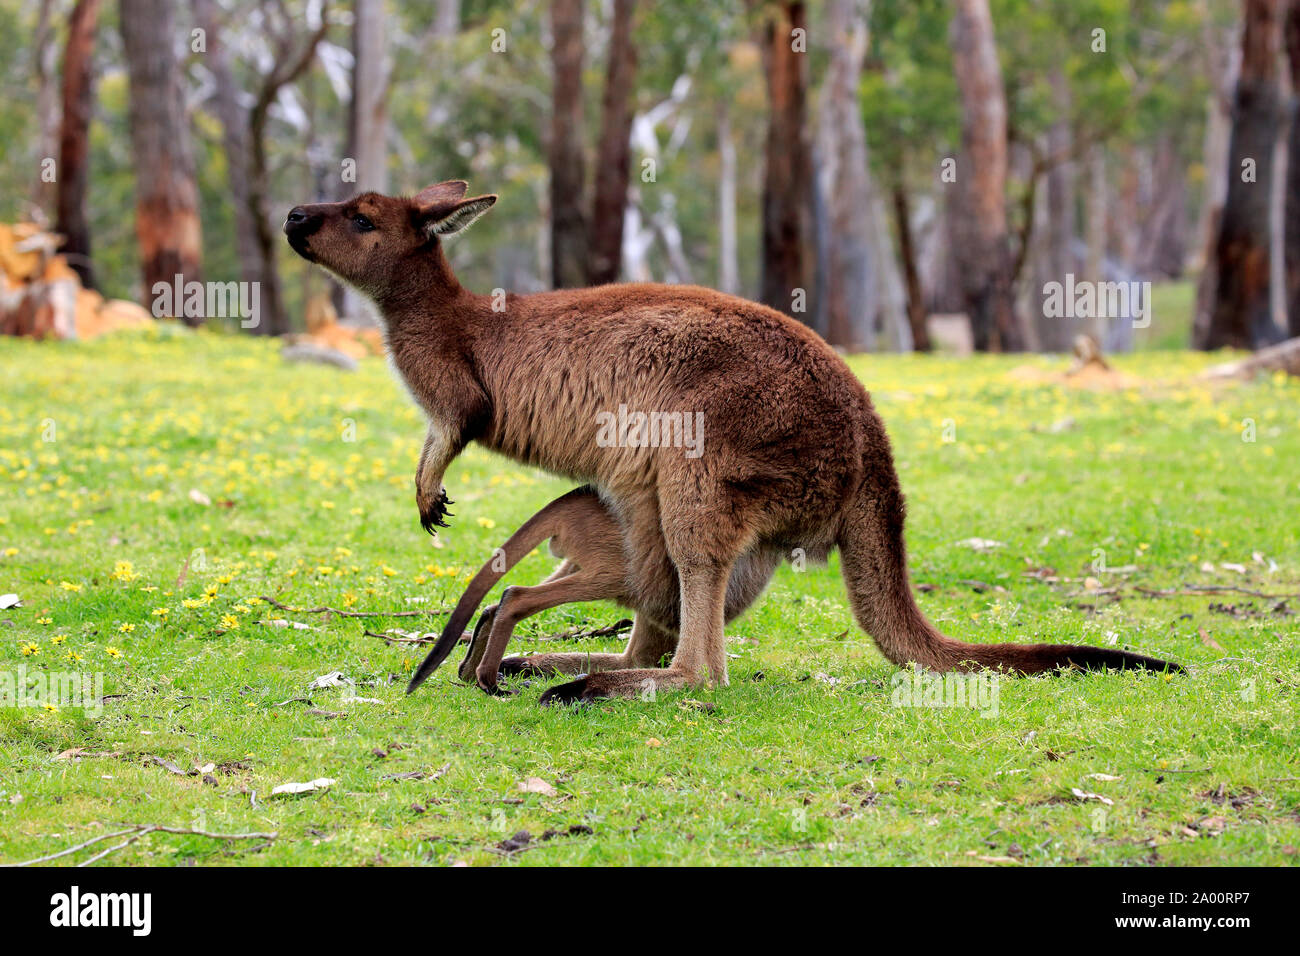 La Isla de los canguros canguro, con jóvenes adultos en la pradera, el Mount Lofty, South Australia, Australia (Macropus fuliginosus fuliginosus) Foto de stock